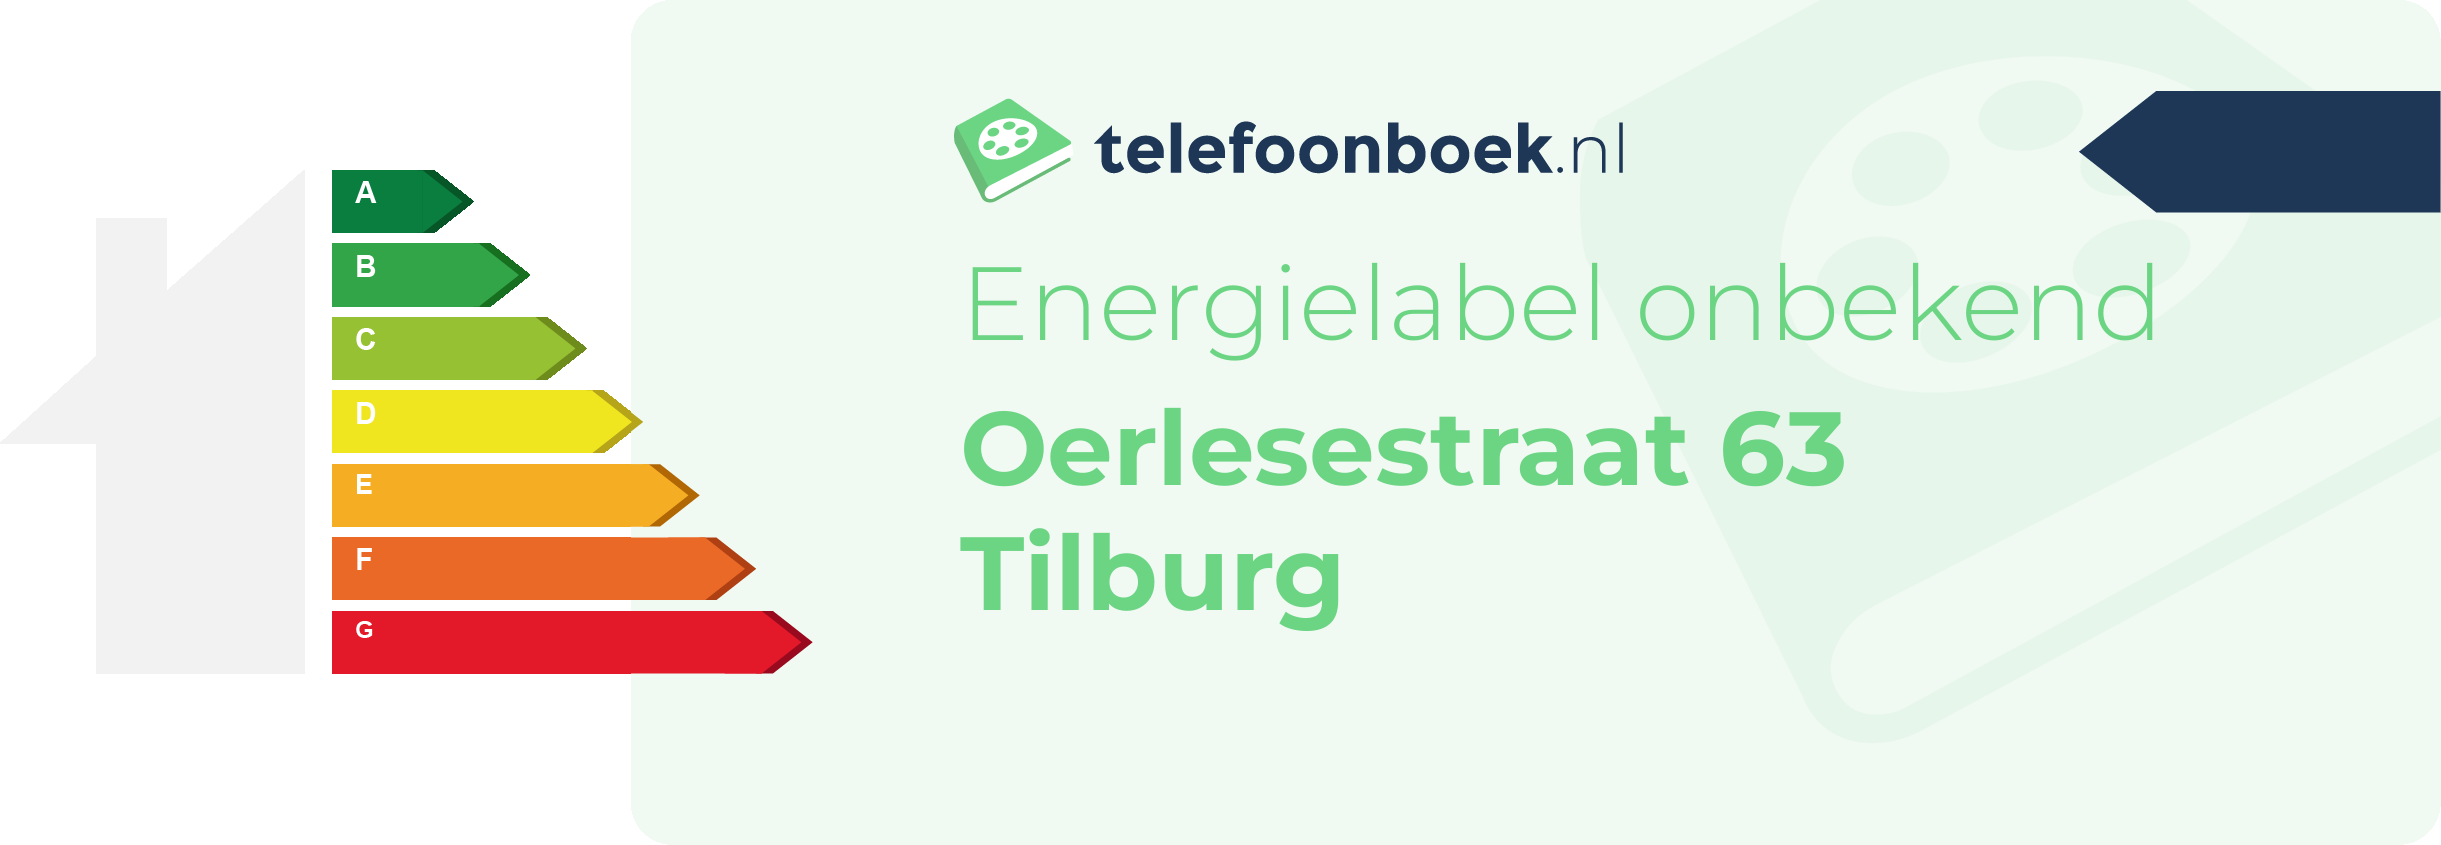 Energielabel Oerlesestraat 63 Tilburg